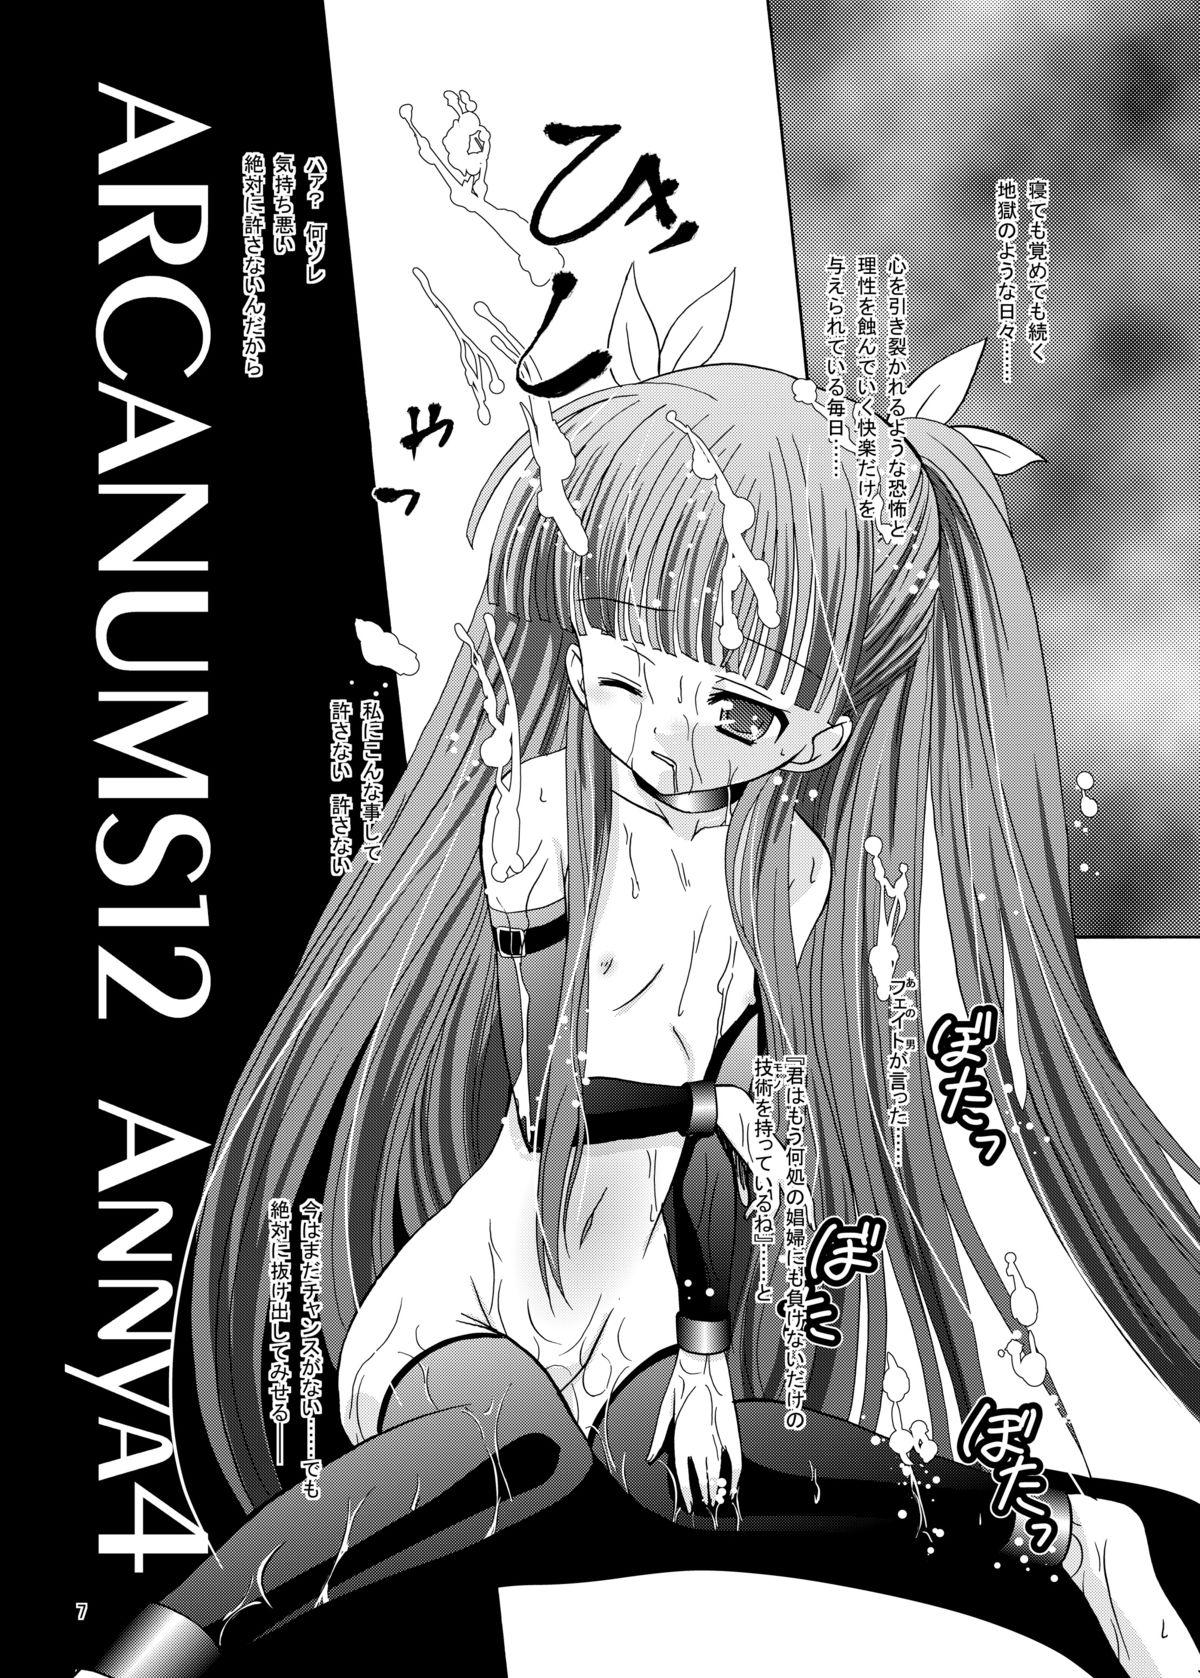 Comendo ARCANUMS 12 Annya4 - Mahou sensei negima Pussy Play - Page 7